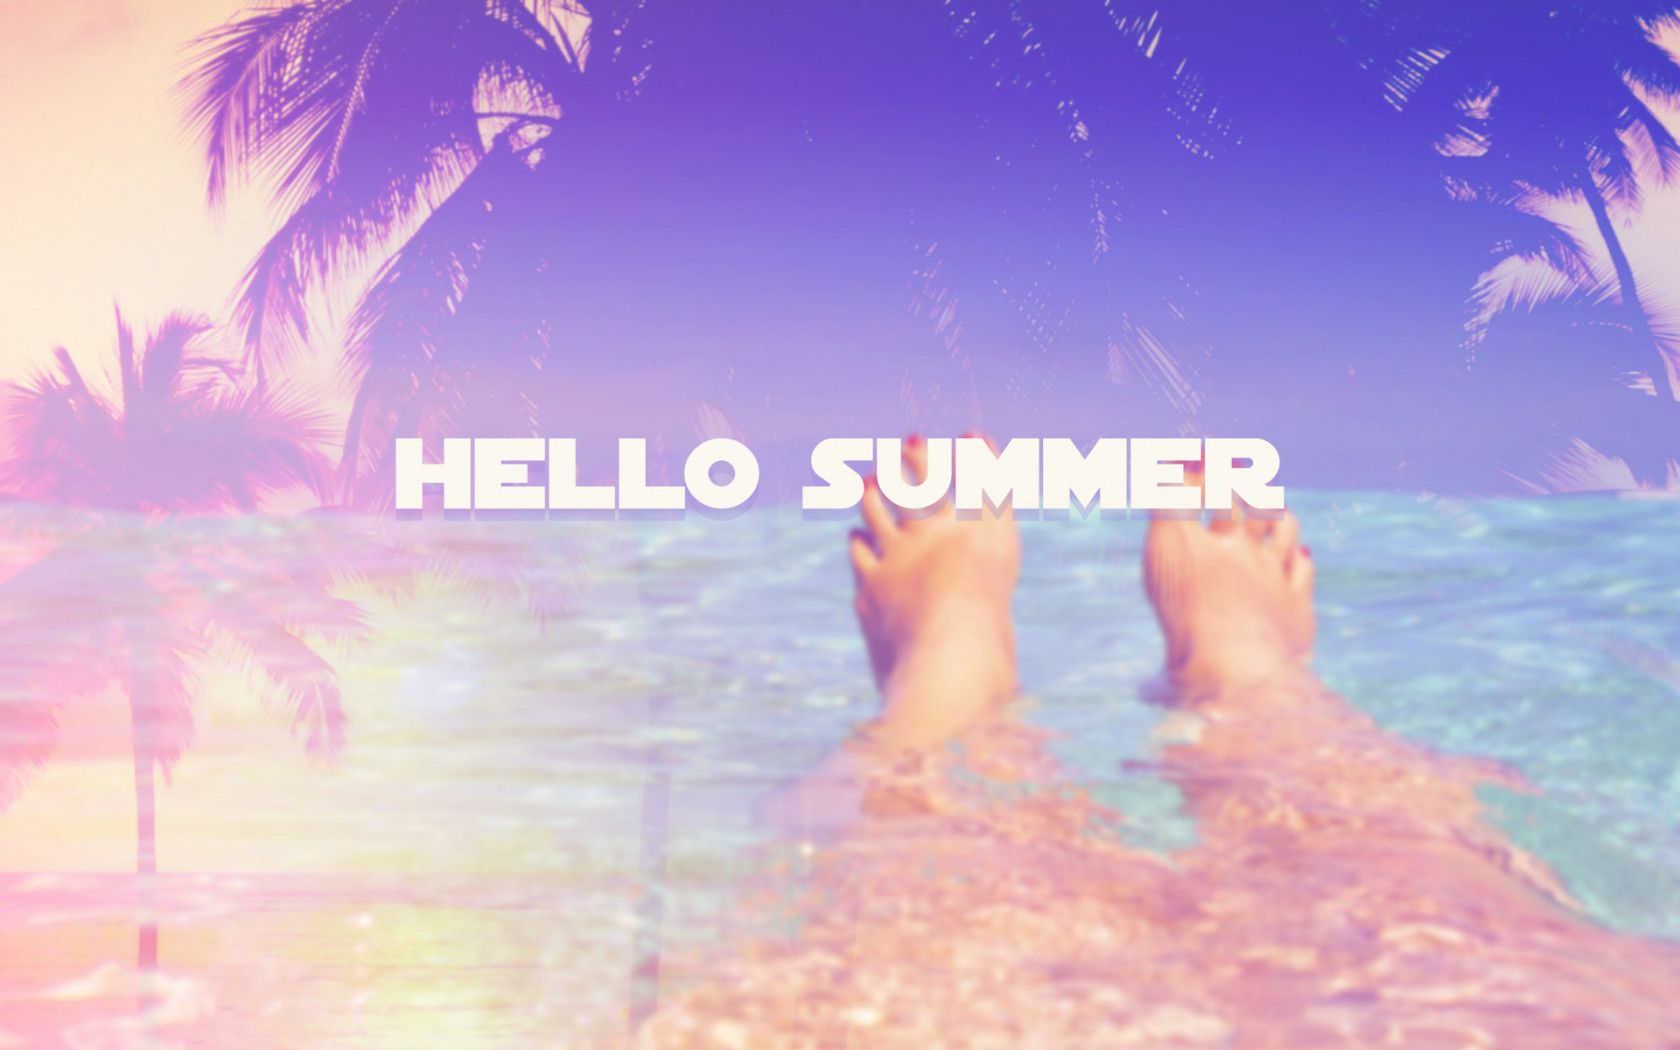 Hello Summer Background. Summer Wallpaper, Cute Summer Wallpaper and Summer iPhone Wallpaper